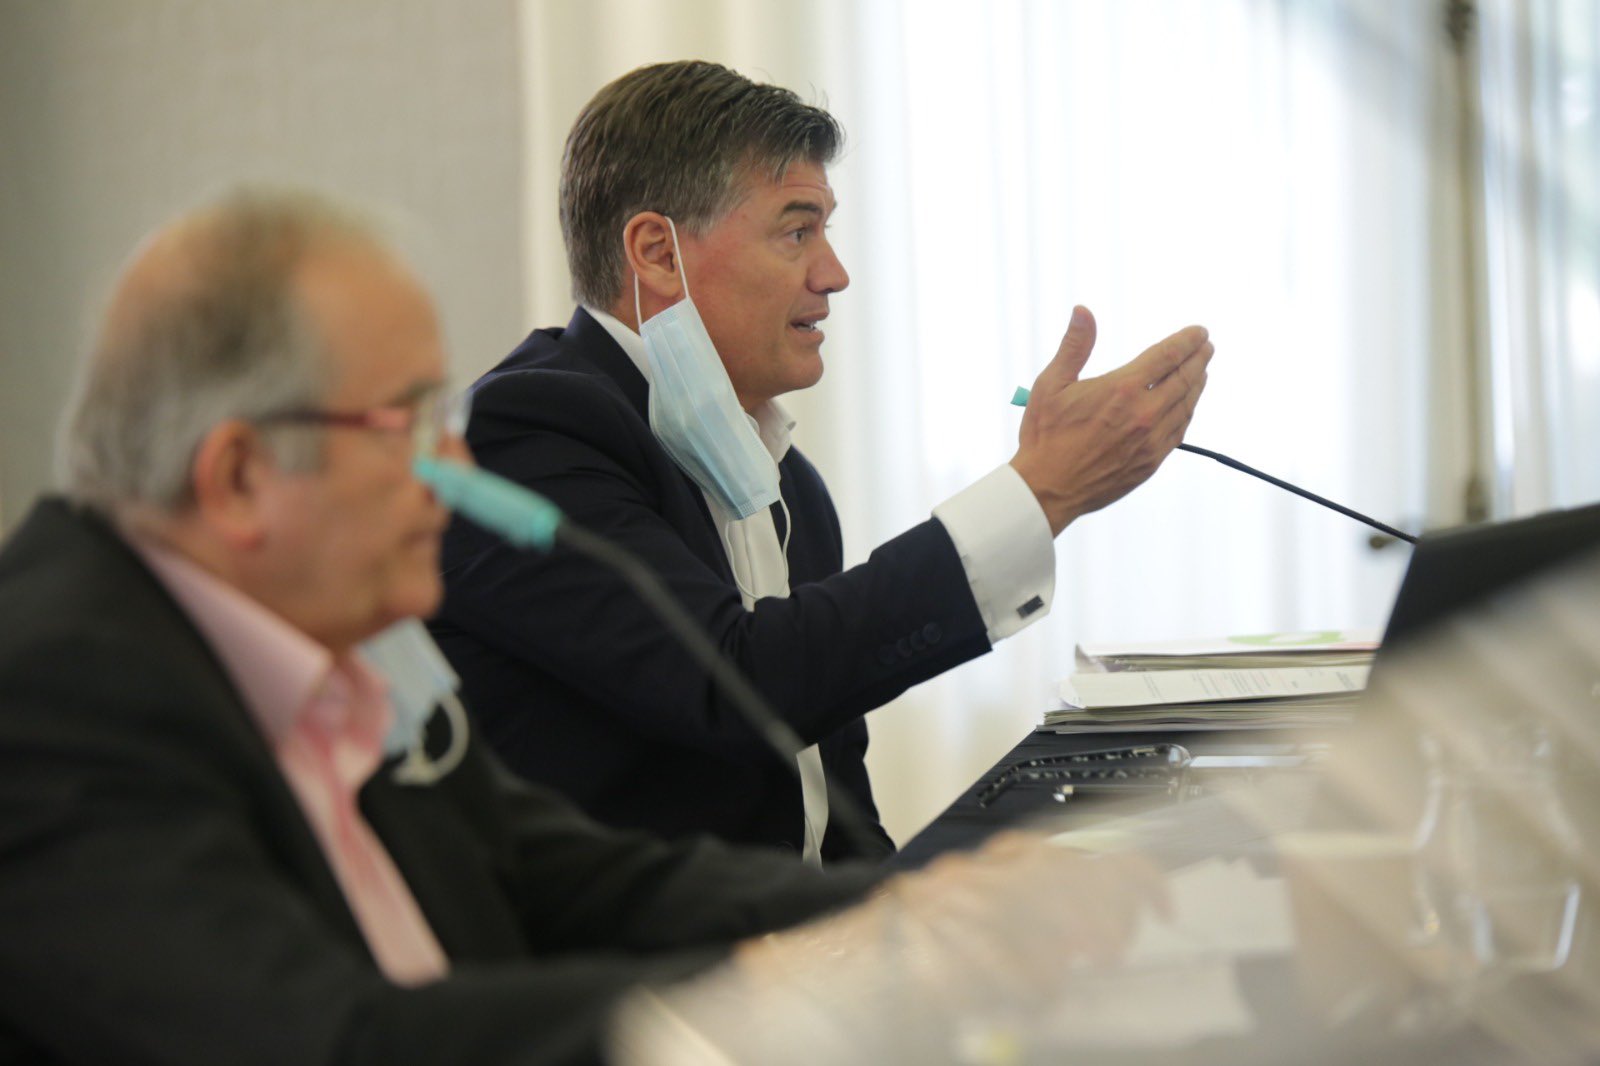 González proposa Antoni Cañete per rellevar-lo a la presidència de Pimec